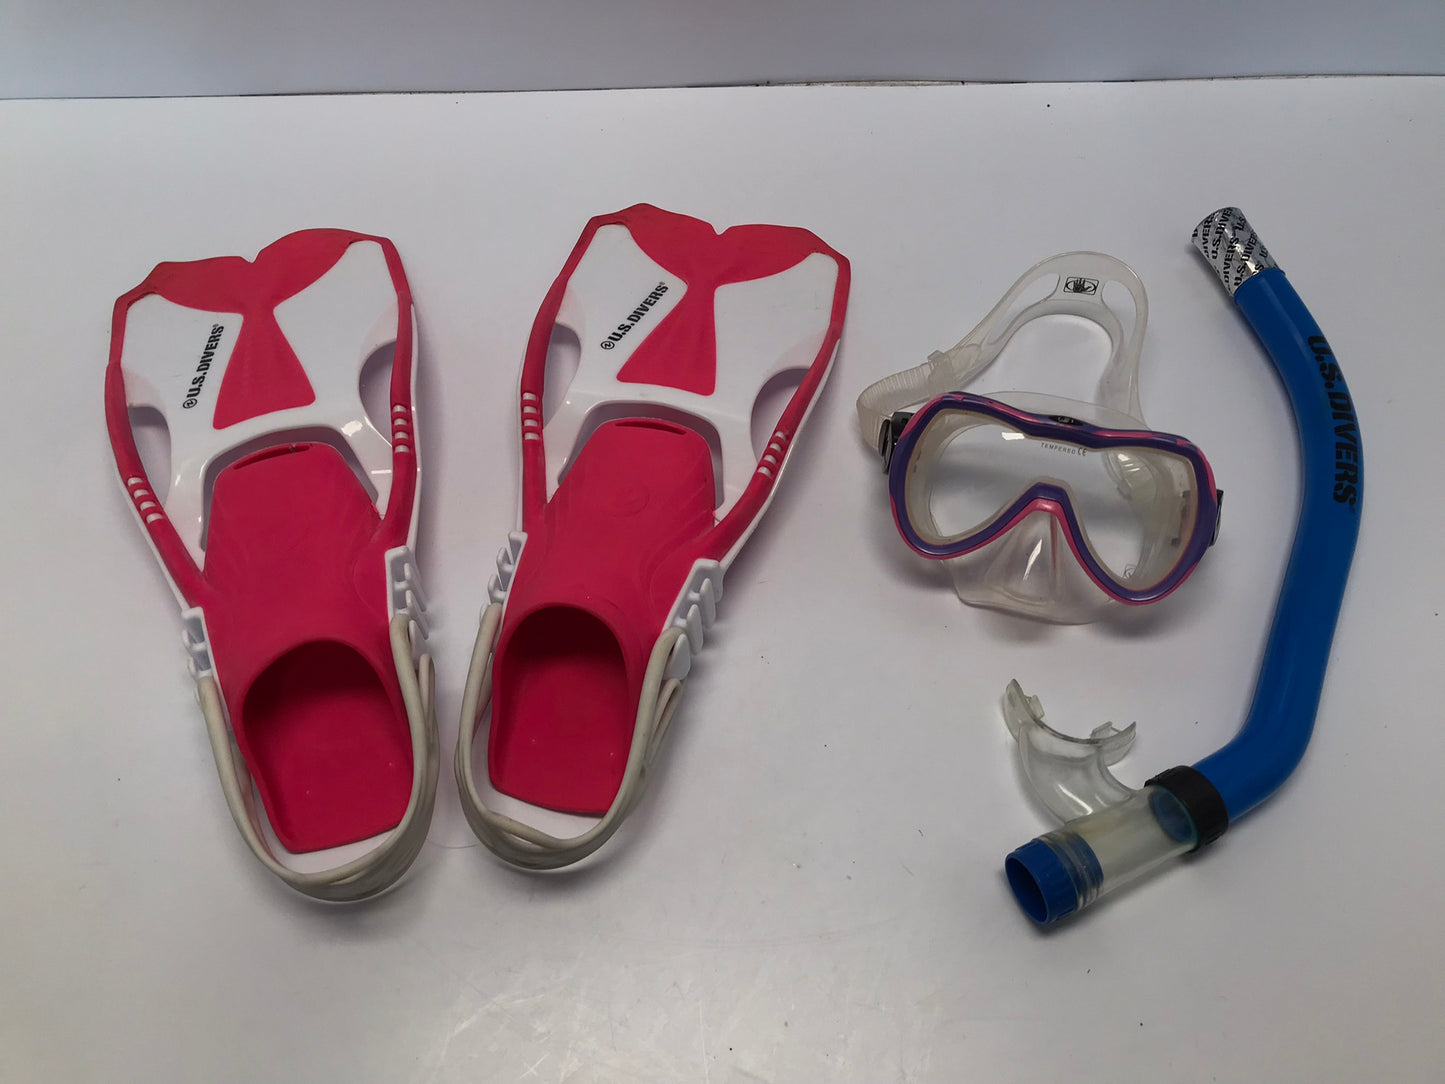 Snorkel Dive Fins Set Child Shoe Size 9-13 US Divers White Pink Blue Excellent